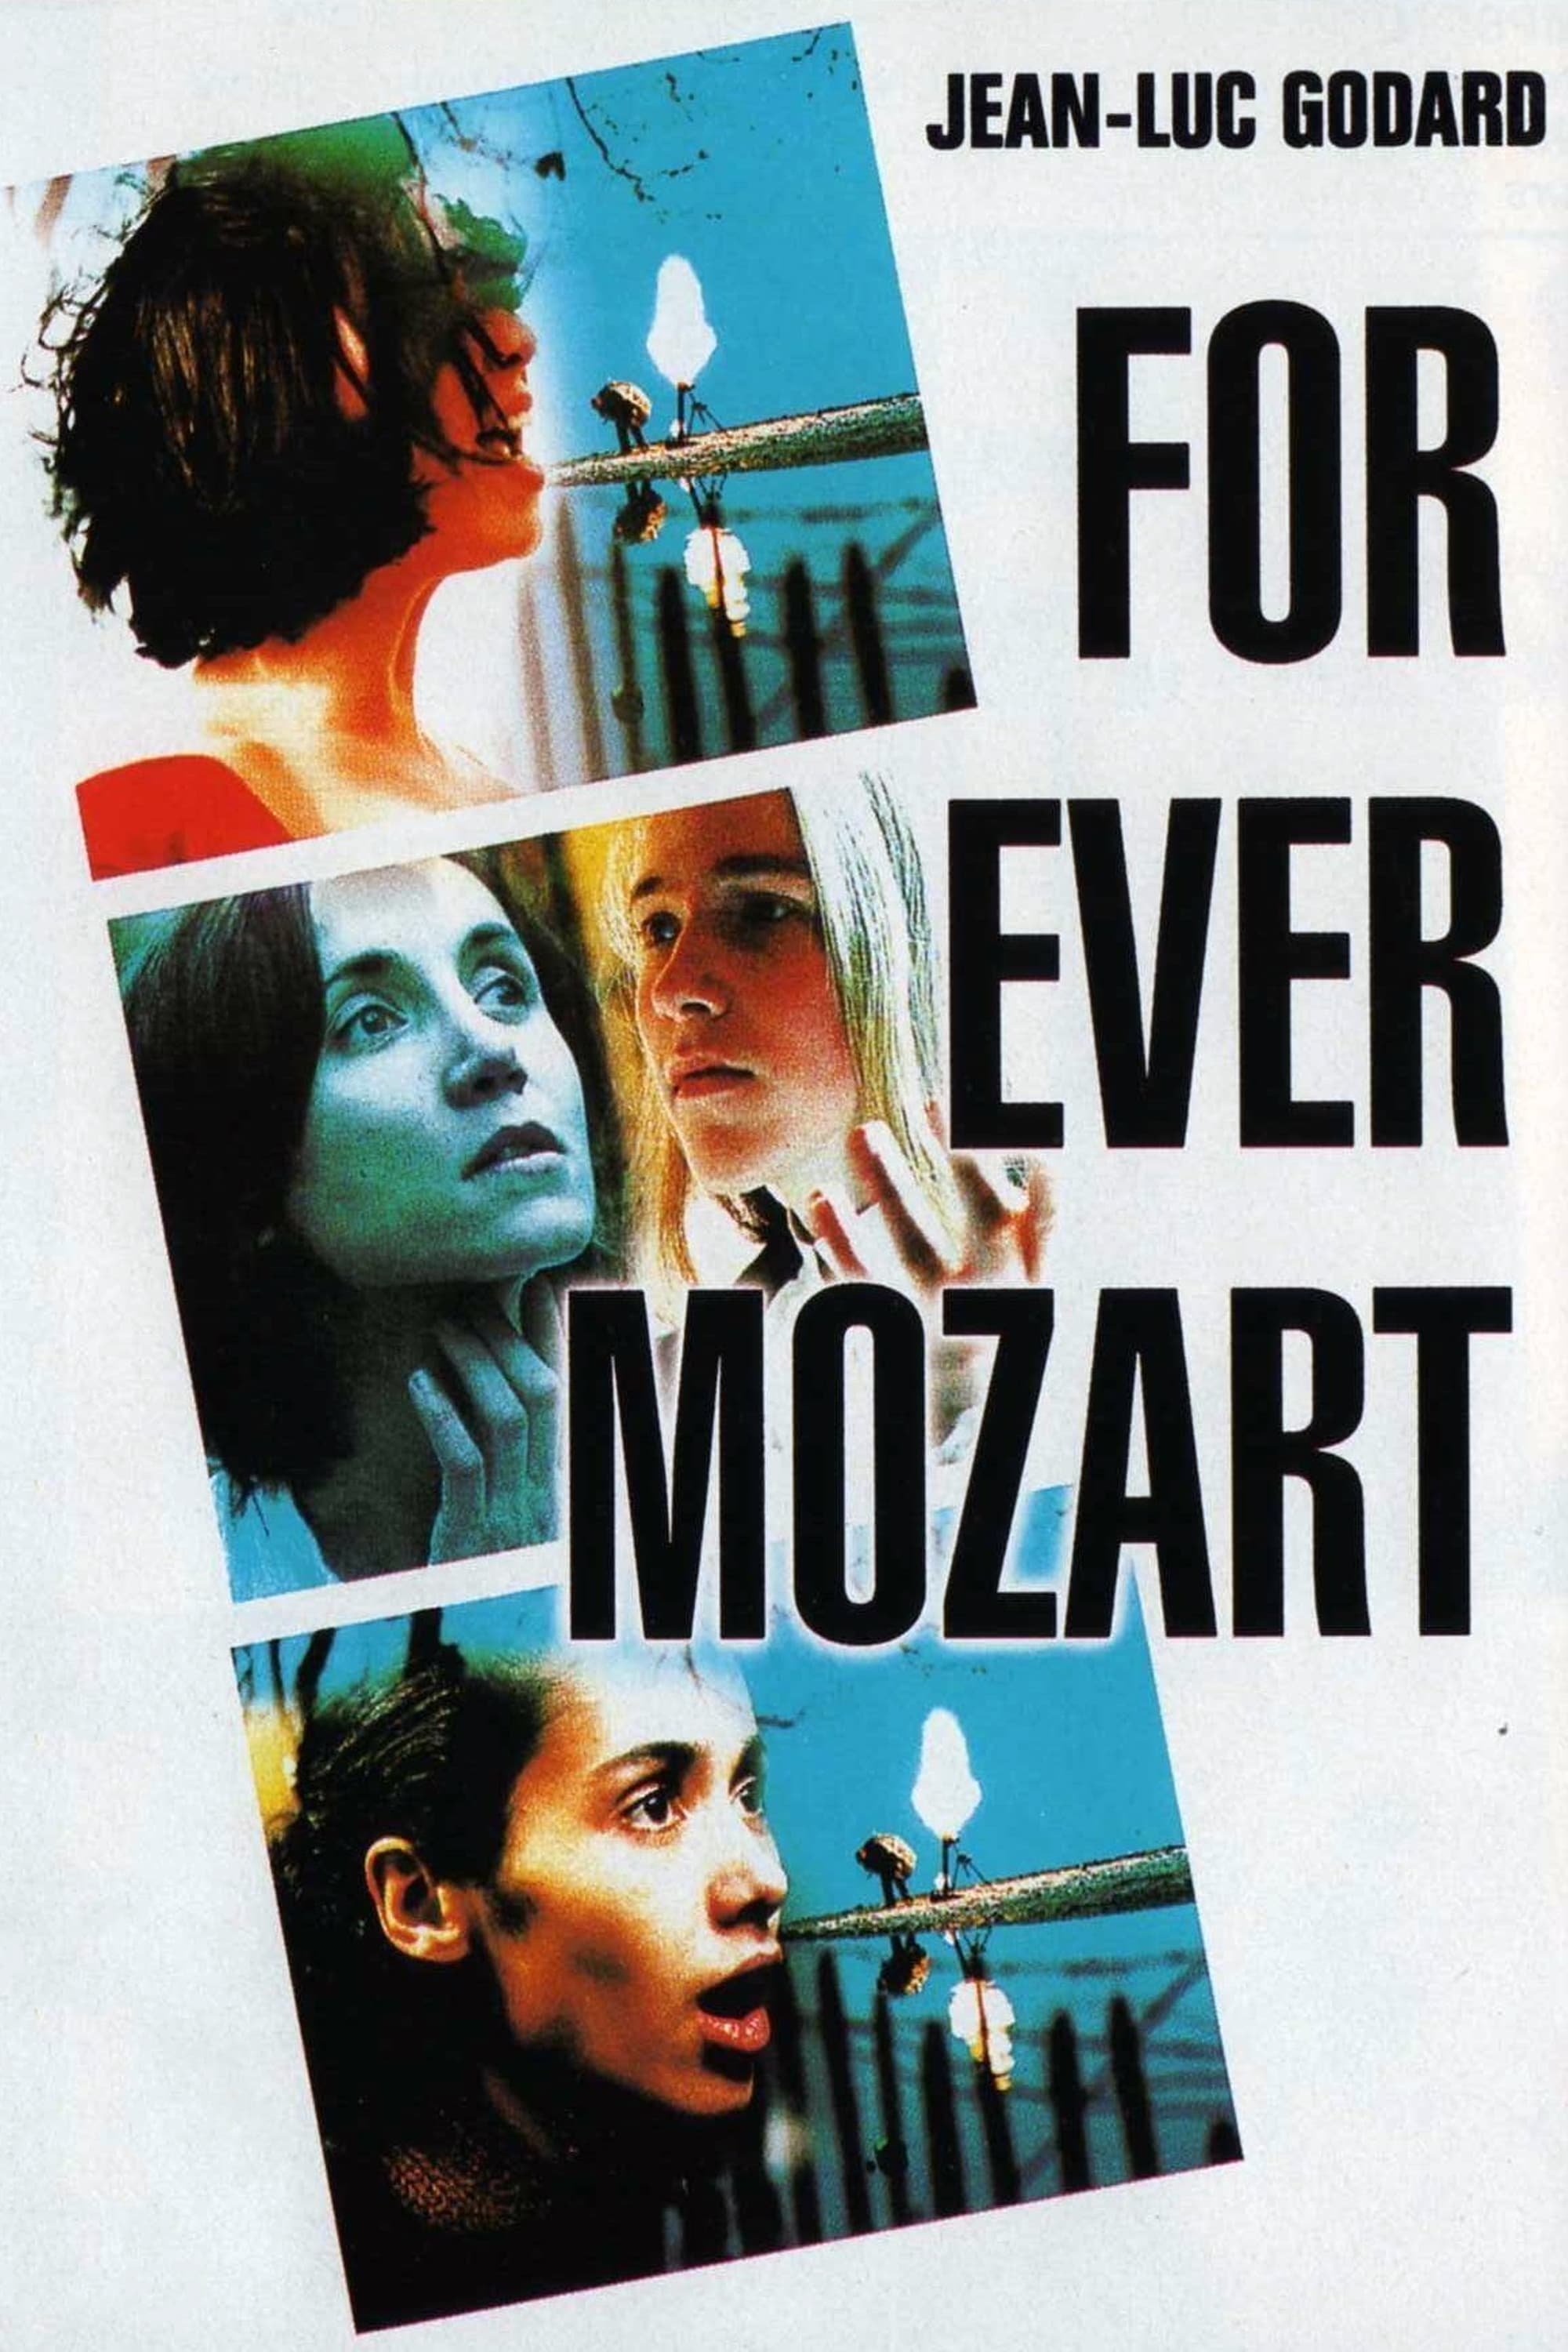 For Ever Mozart (1996)